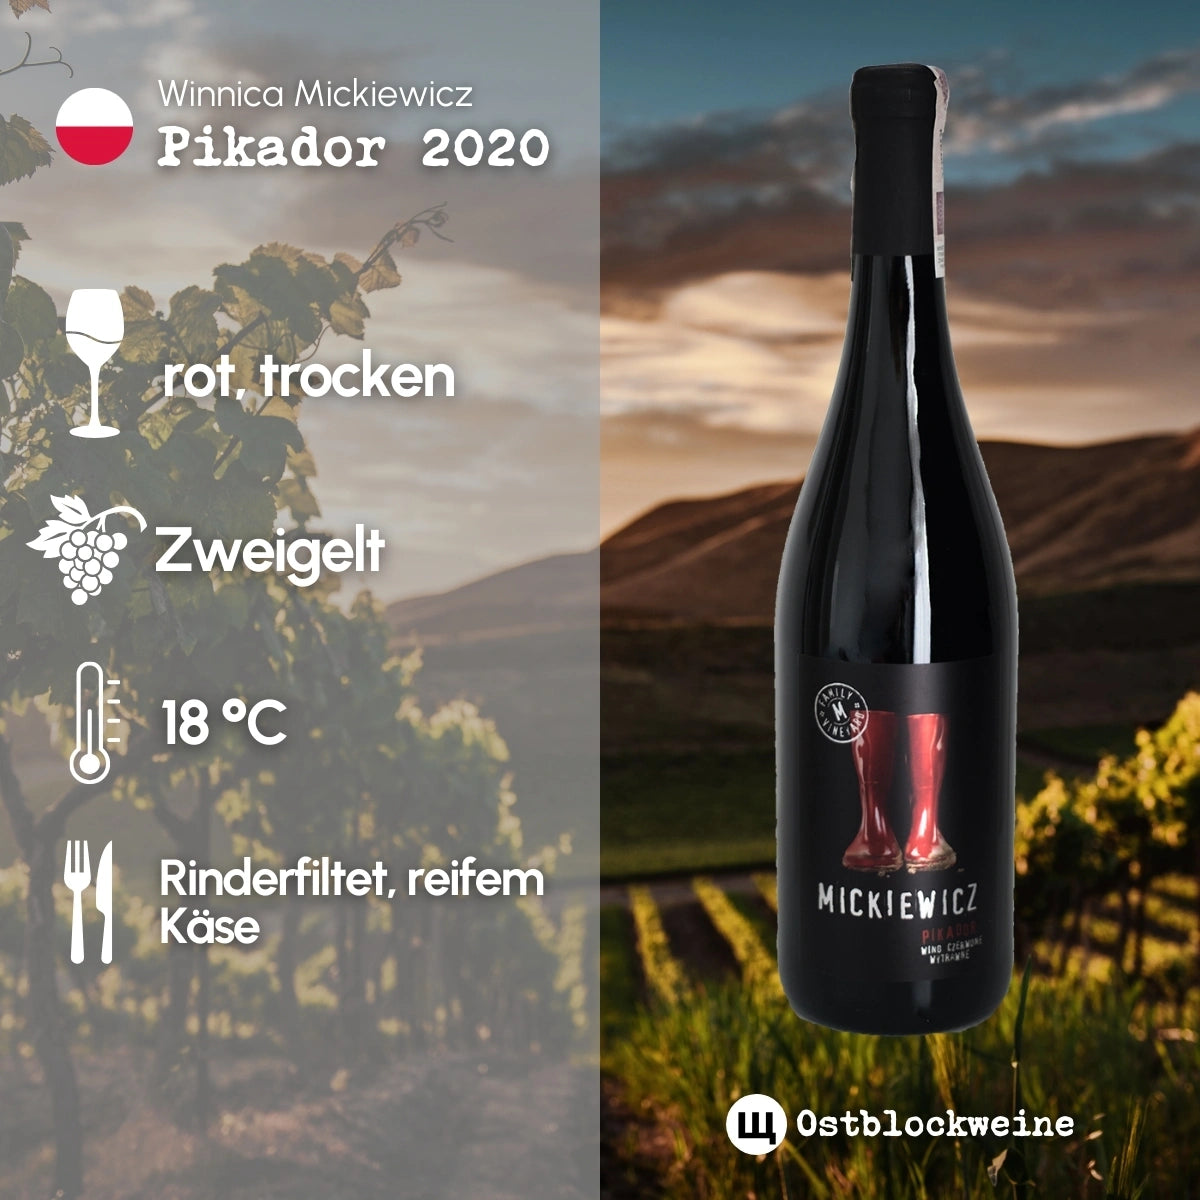 Pikador 2020 - Rotwein trocken aus Polen - Winnica Mickiewicz - ostblockweine